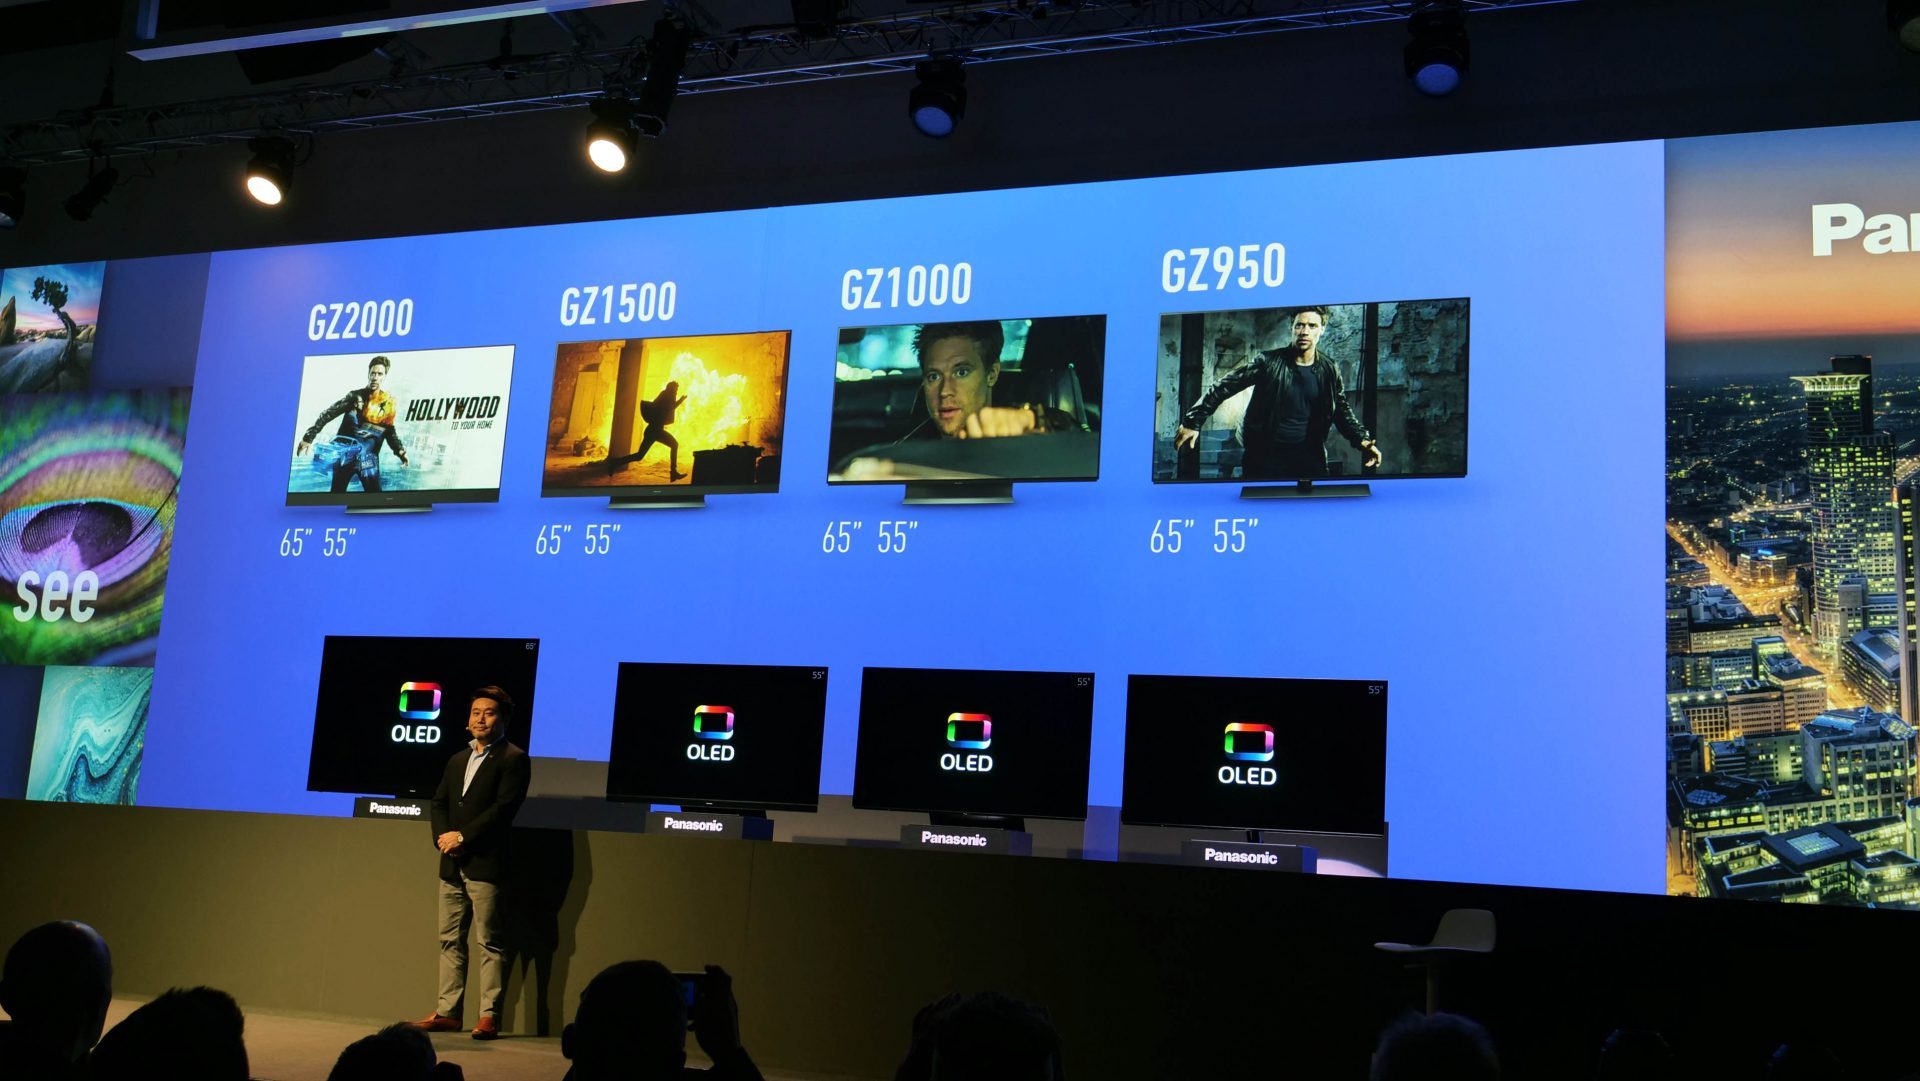 2019 års Panasonic-TV får Dolby Vision och HDR10+